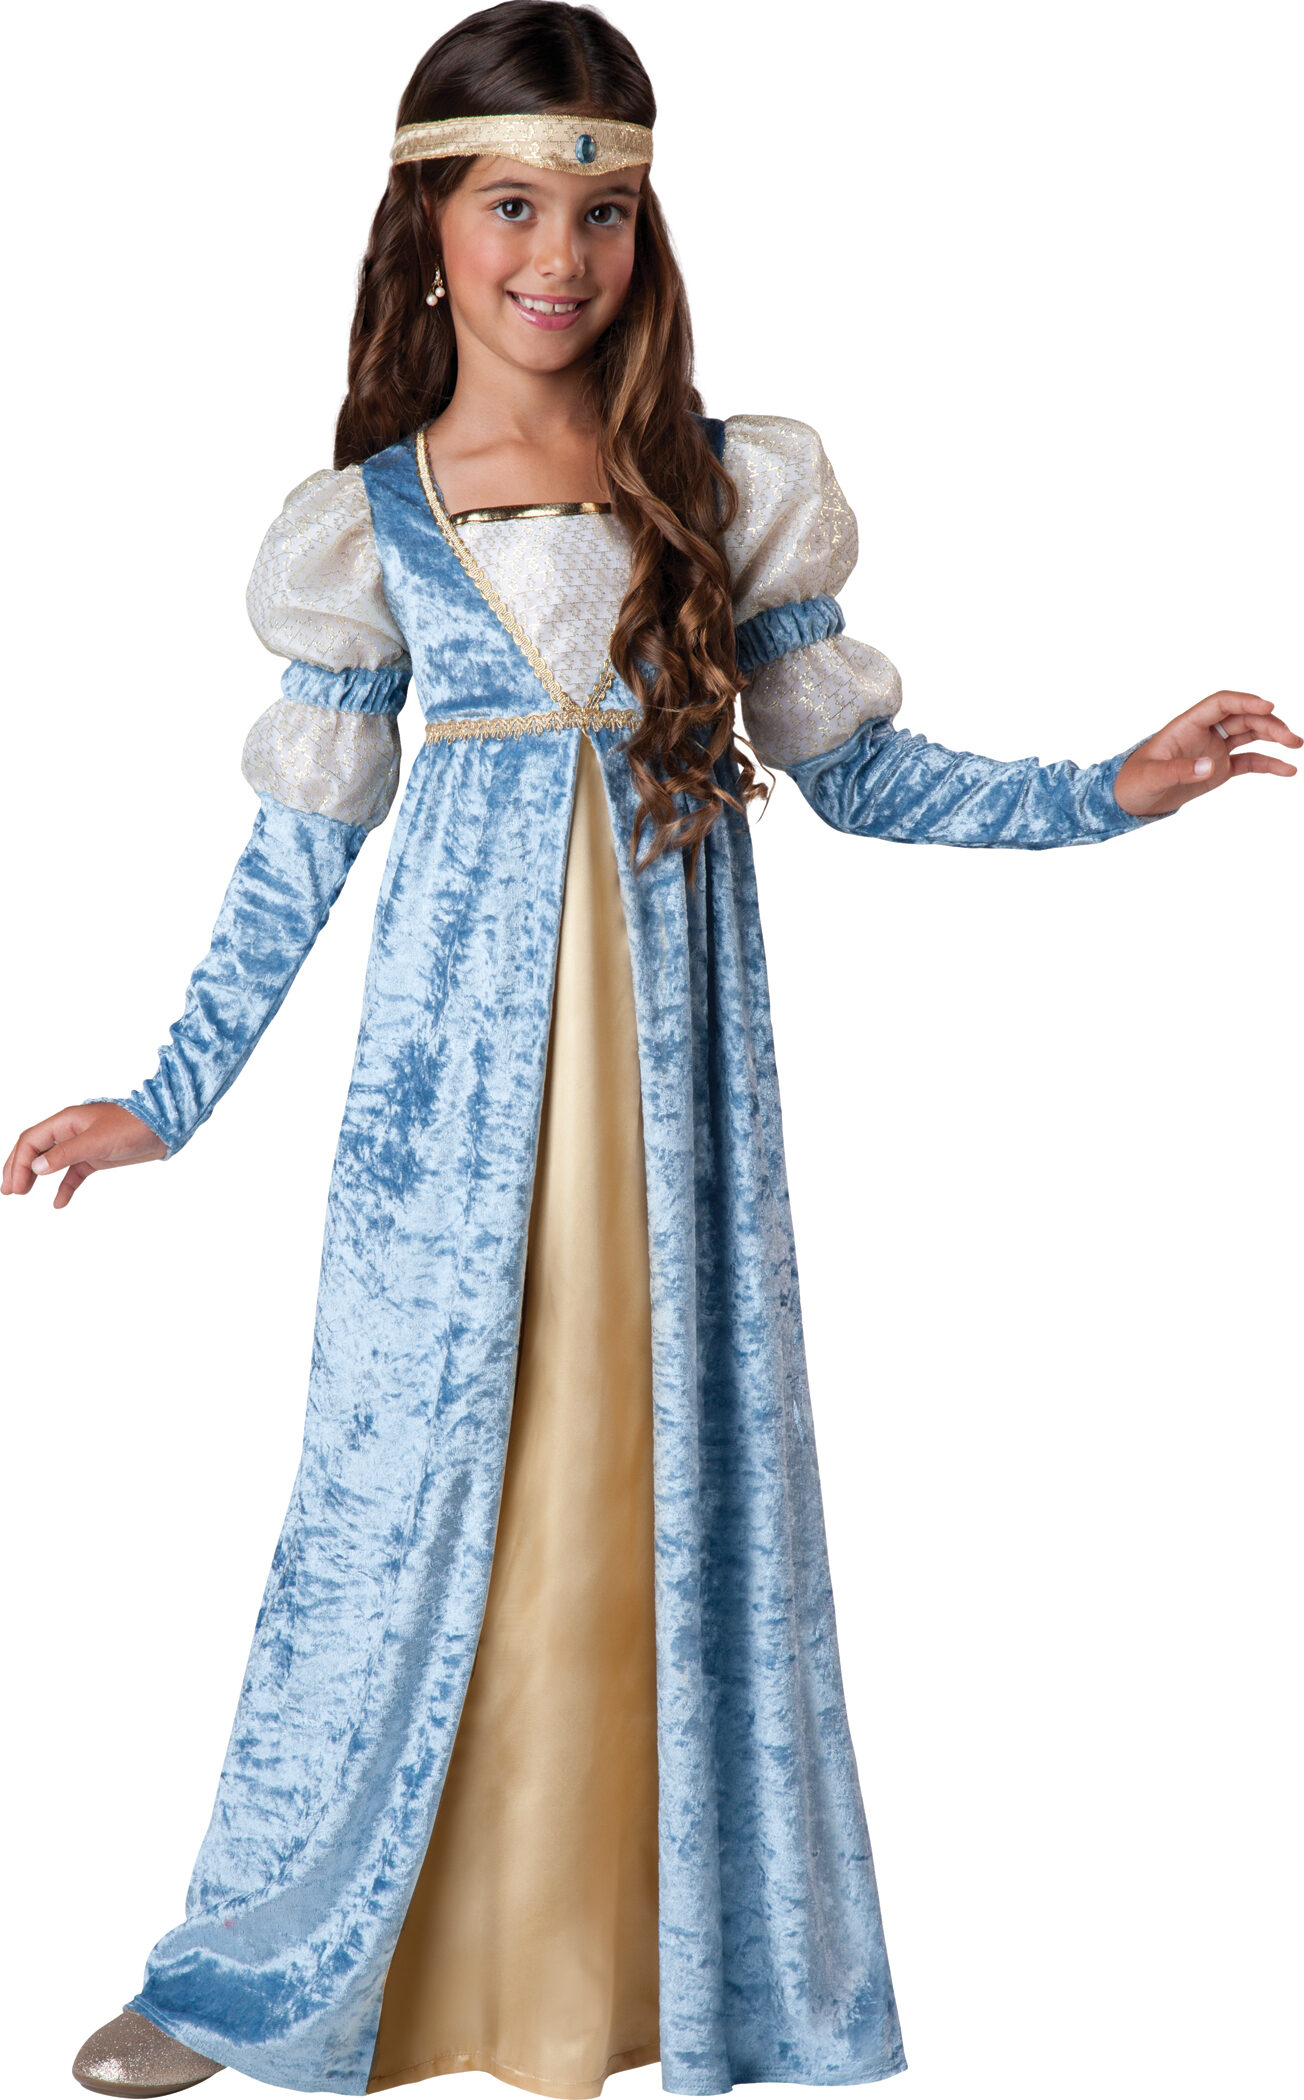 Нарядиться принцессой. Платья принцесс средневековья. Наряды принцесс средневековья. Костюм средневековой принцессы. Средневековый костюм для девочки.